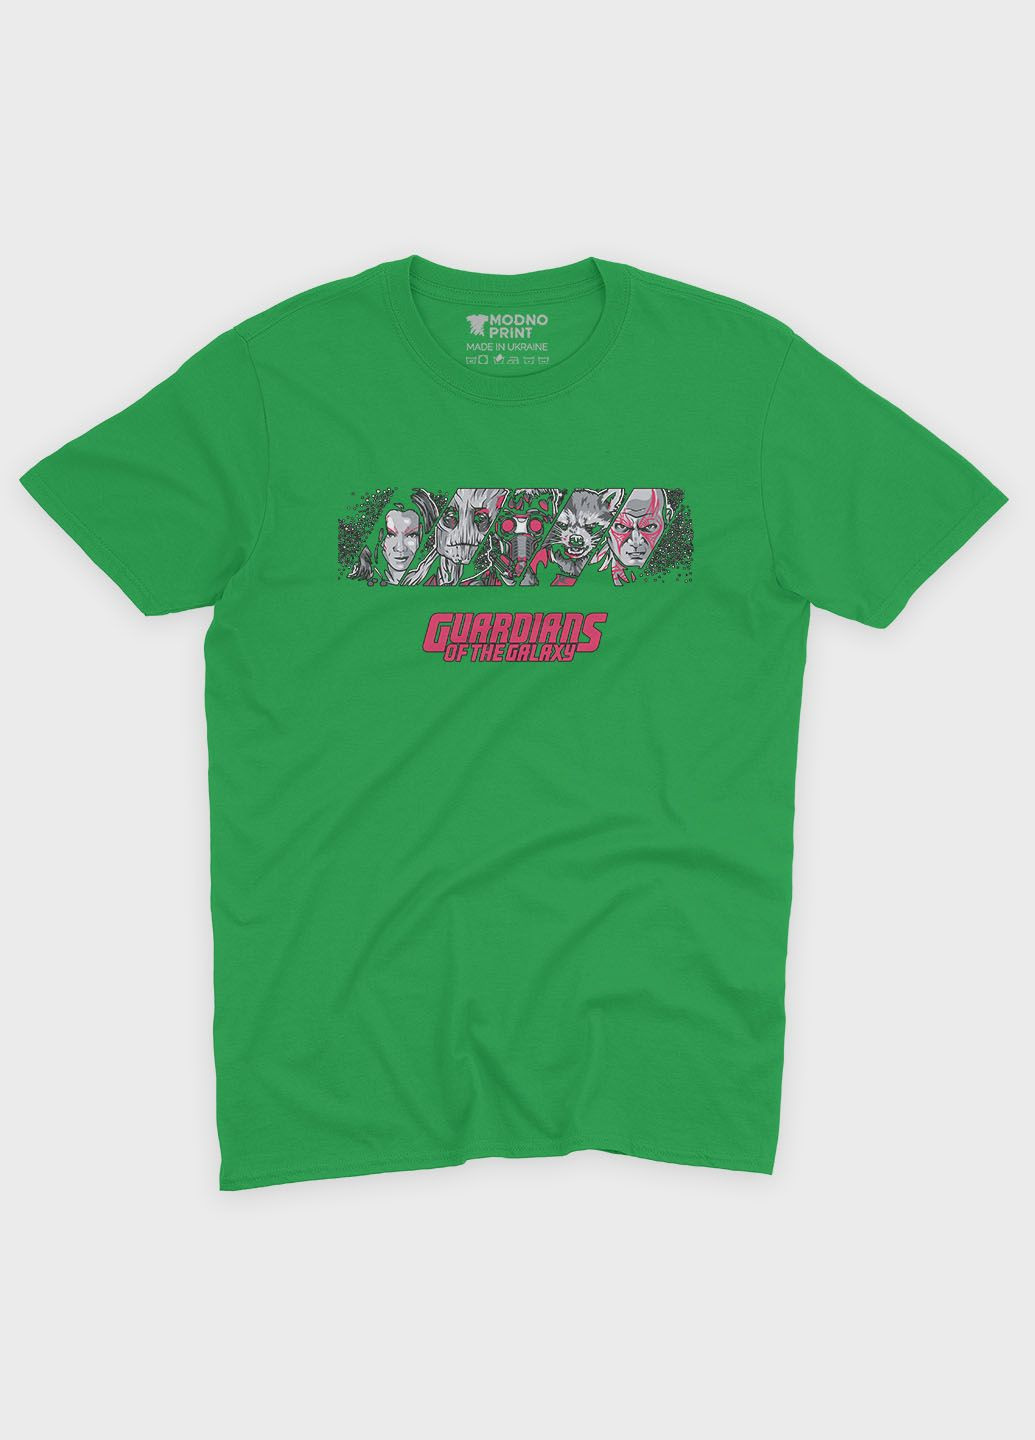 Зеленая демисезонная футболка для девочки с принтом супергероев - часовые галактики (ts001-1-keg-006-017-013-g) Modno